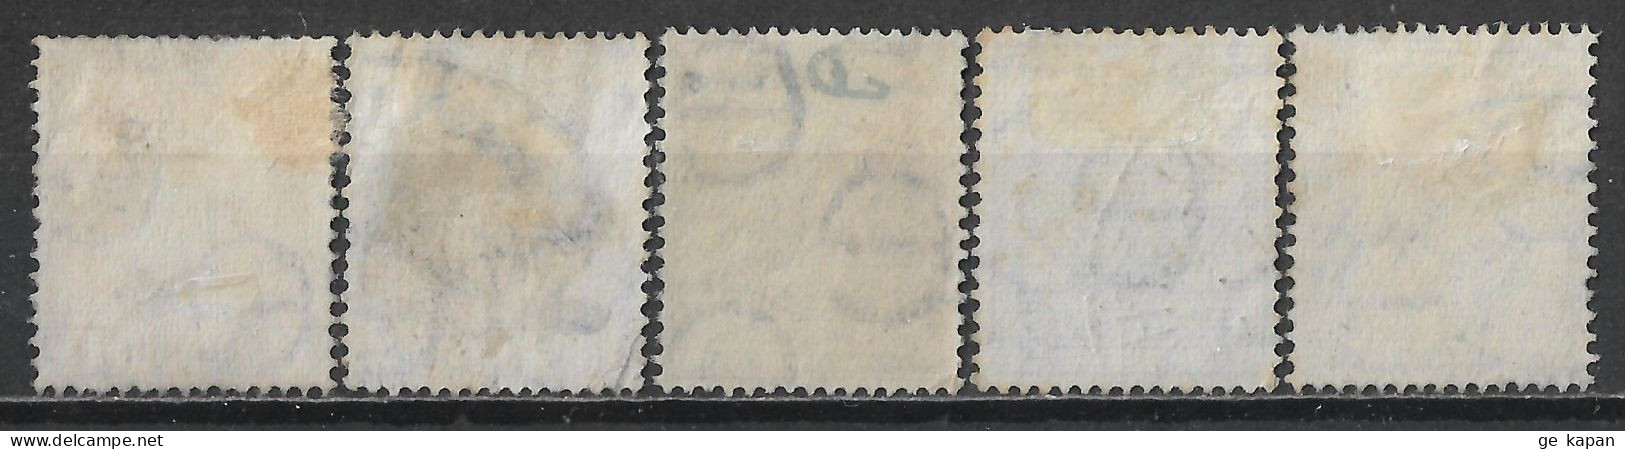 1940-1941 IRELAND SET OF 5 USED STAMPS (Michel # 72A,74A,75A,76AI,77A) CV €1.80 - Oblitérés